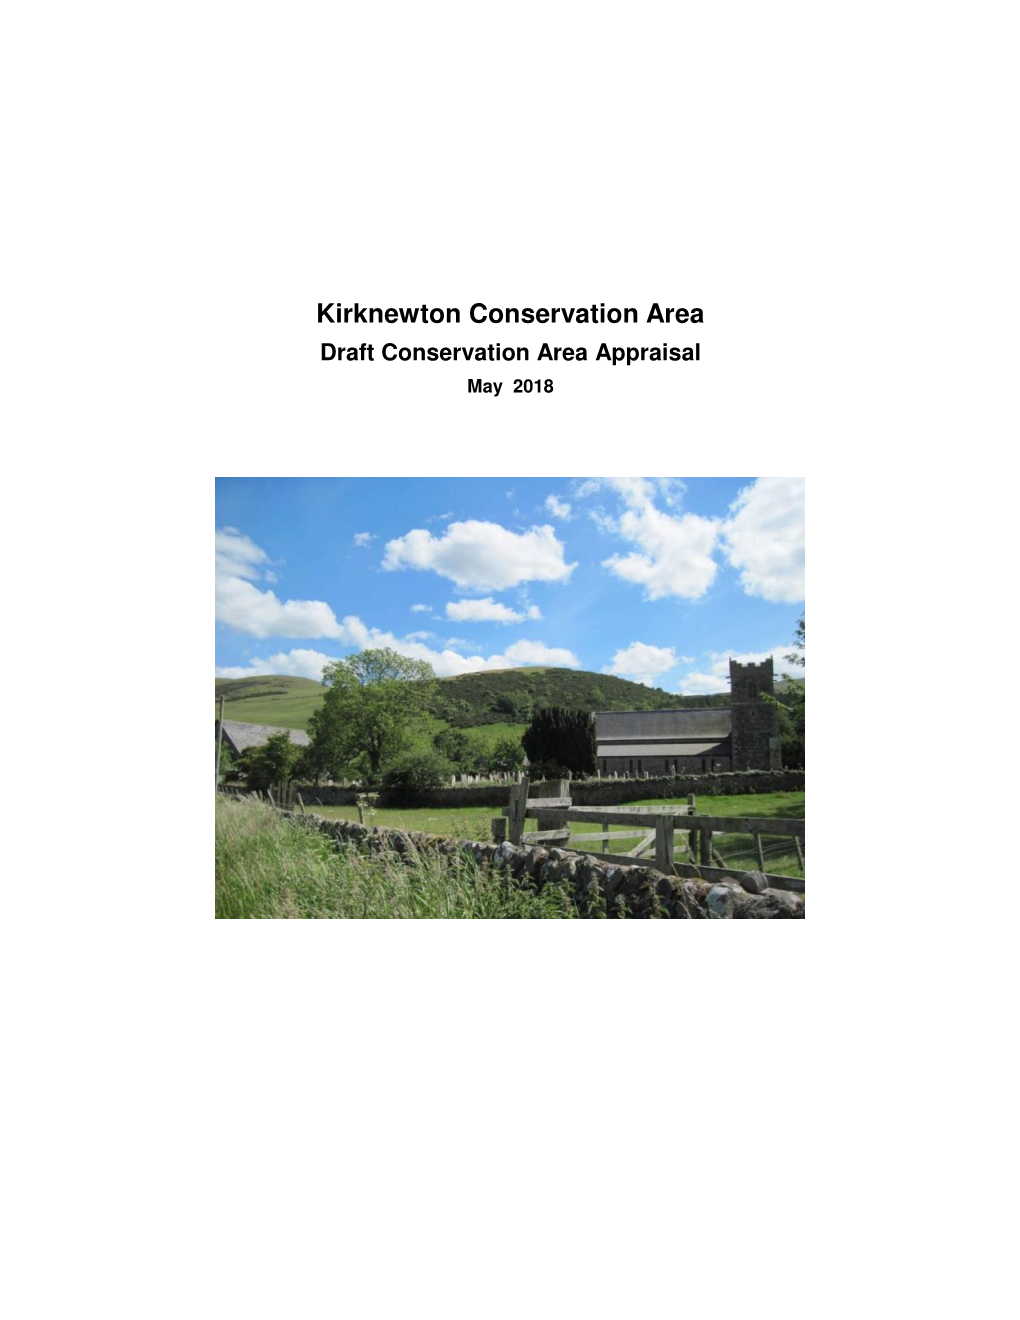 Kirknewton Conservation Area Draft Conservation Area Appraisal May 2018